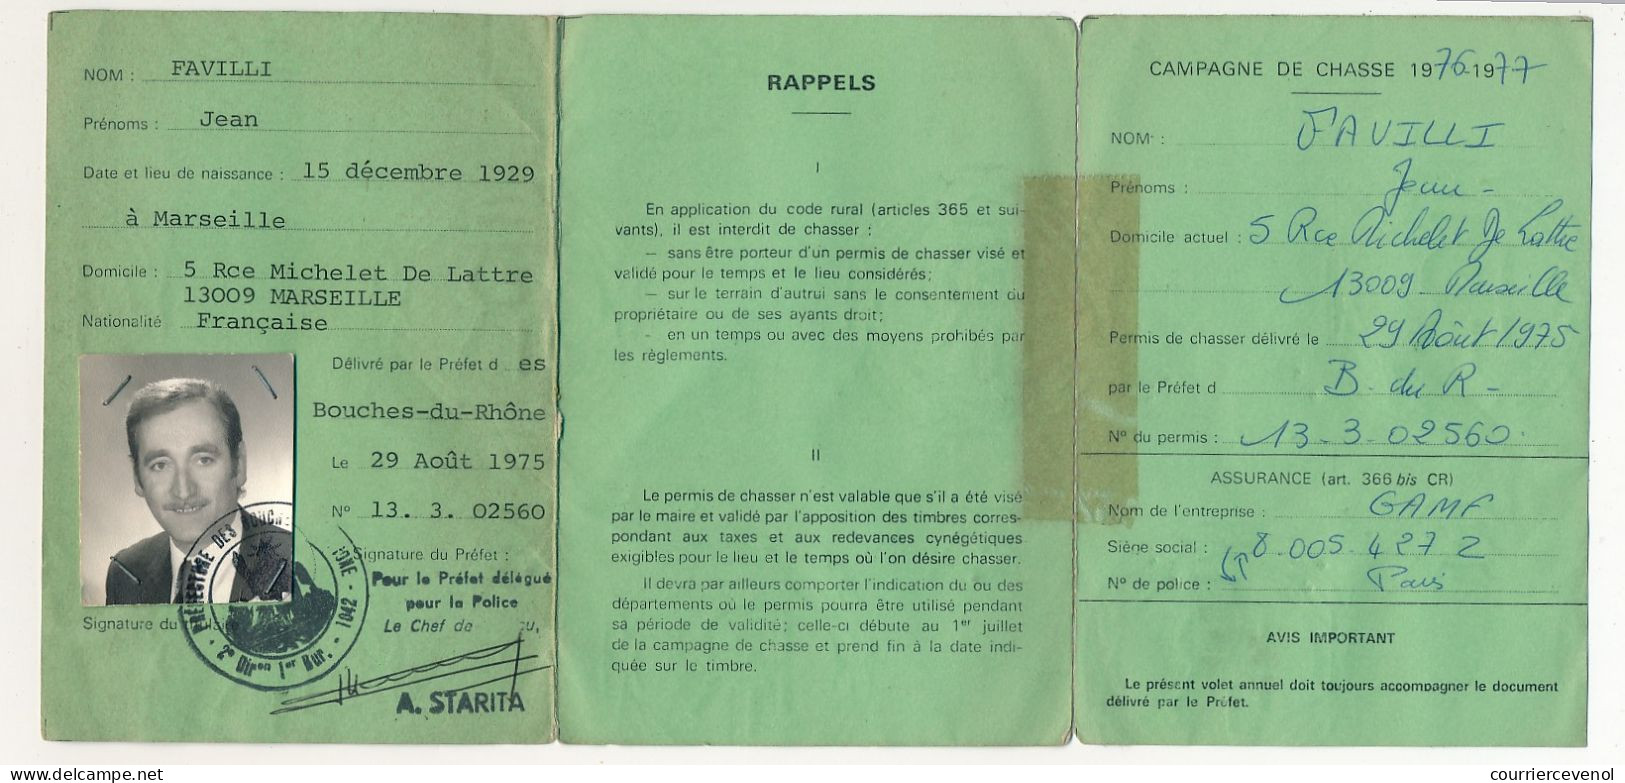 FRANCE - Permis De Chasser (Original Gratuit) - 2 Timbres Départementaux 1977 Et 1978, Ce Dernier Revêtu D'adhésif - Lettres & Documents